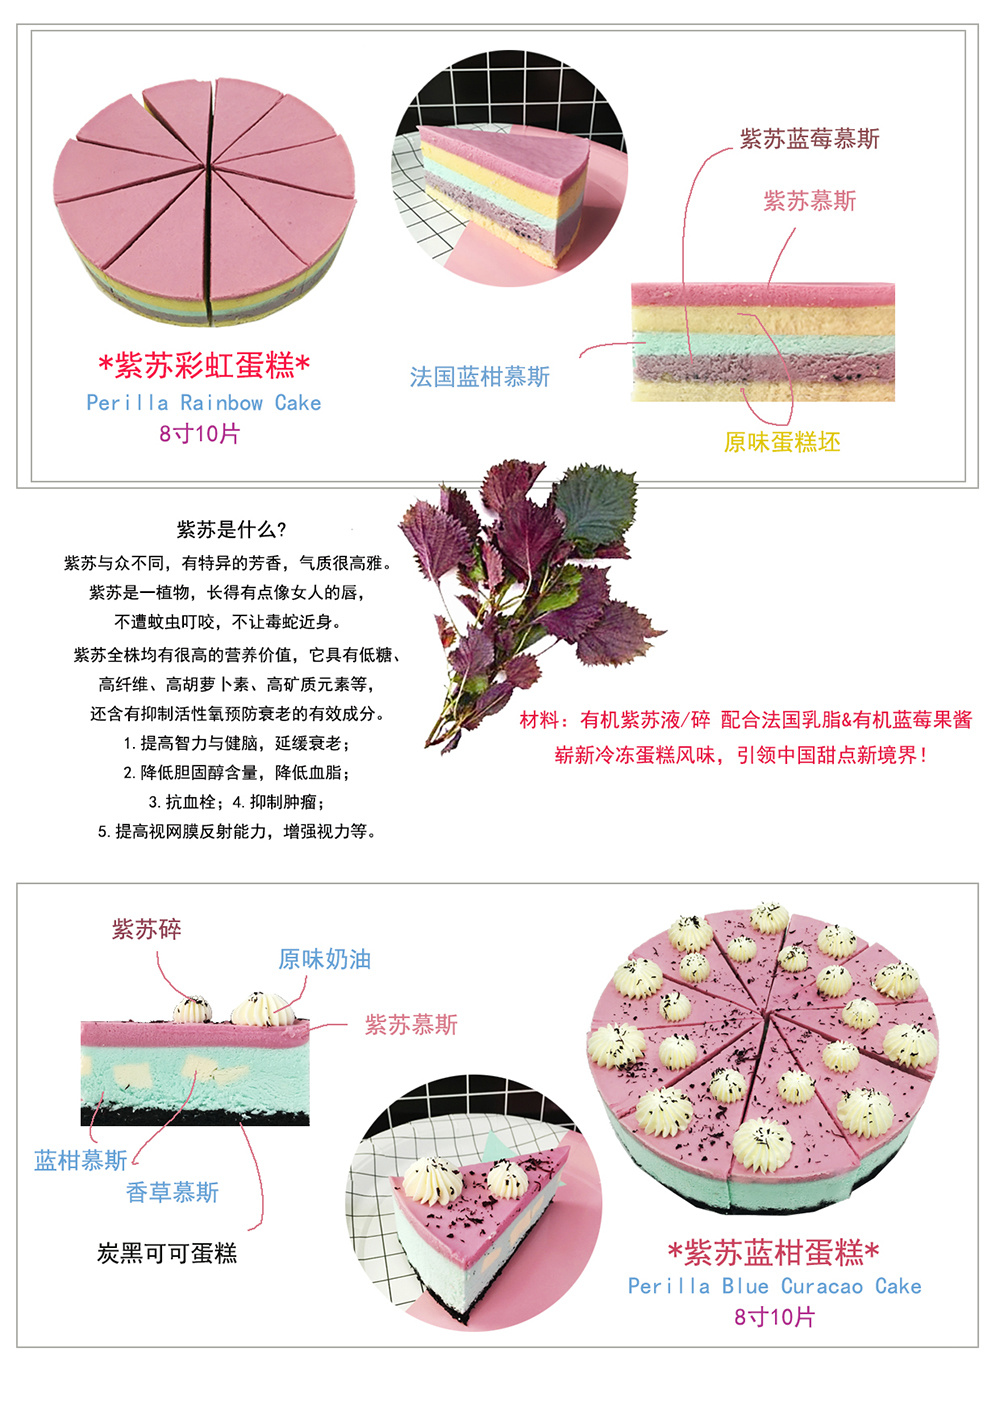 紫苏彩虹/蓝柑蛋糕